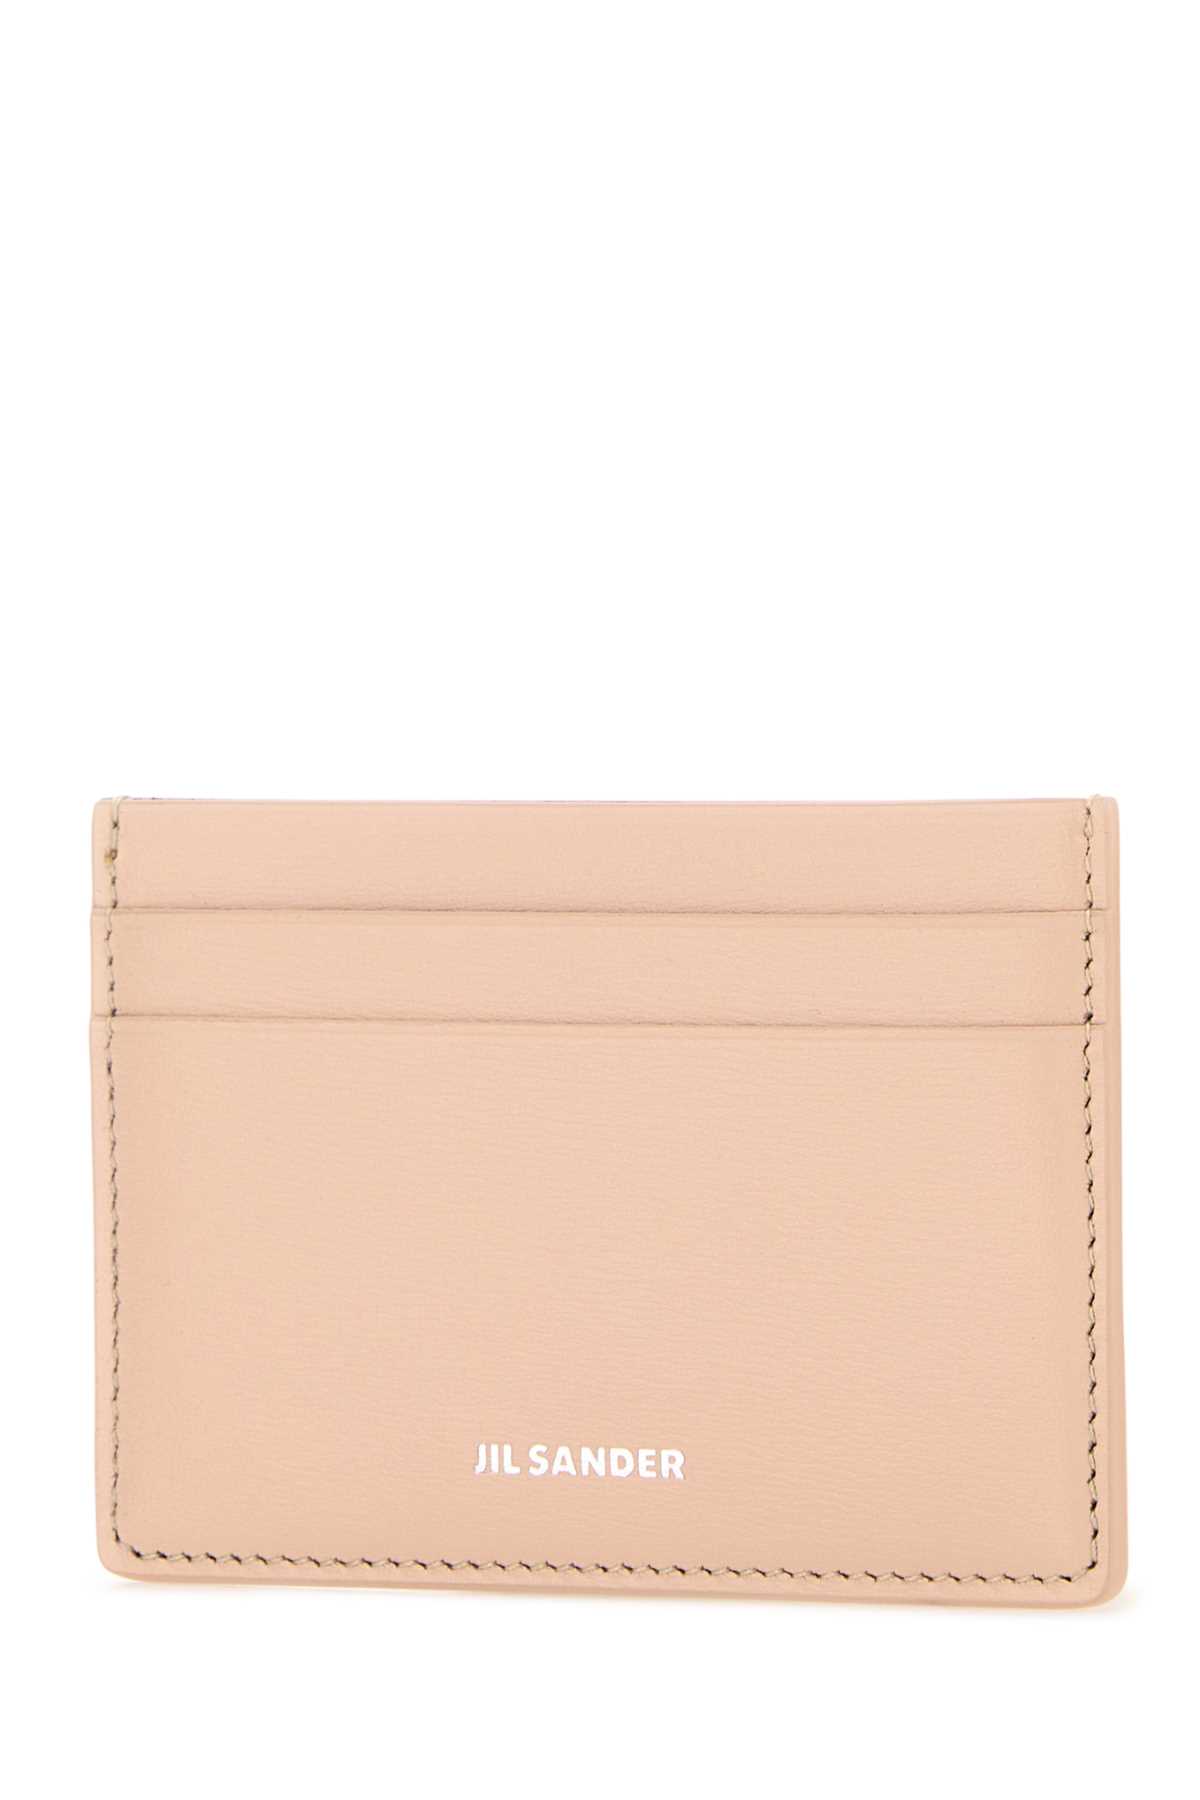 Shop Jil Sander Pastel Pink Leather Card Holder In 679